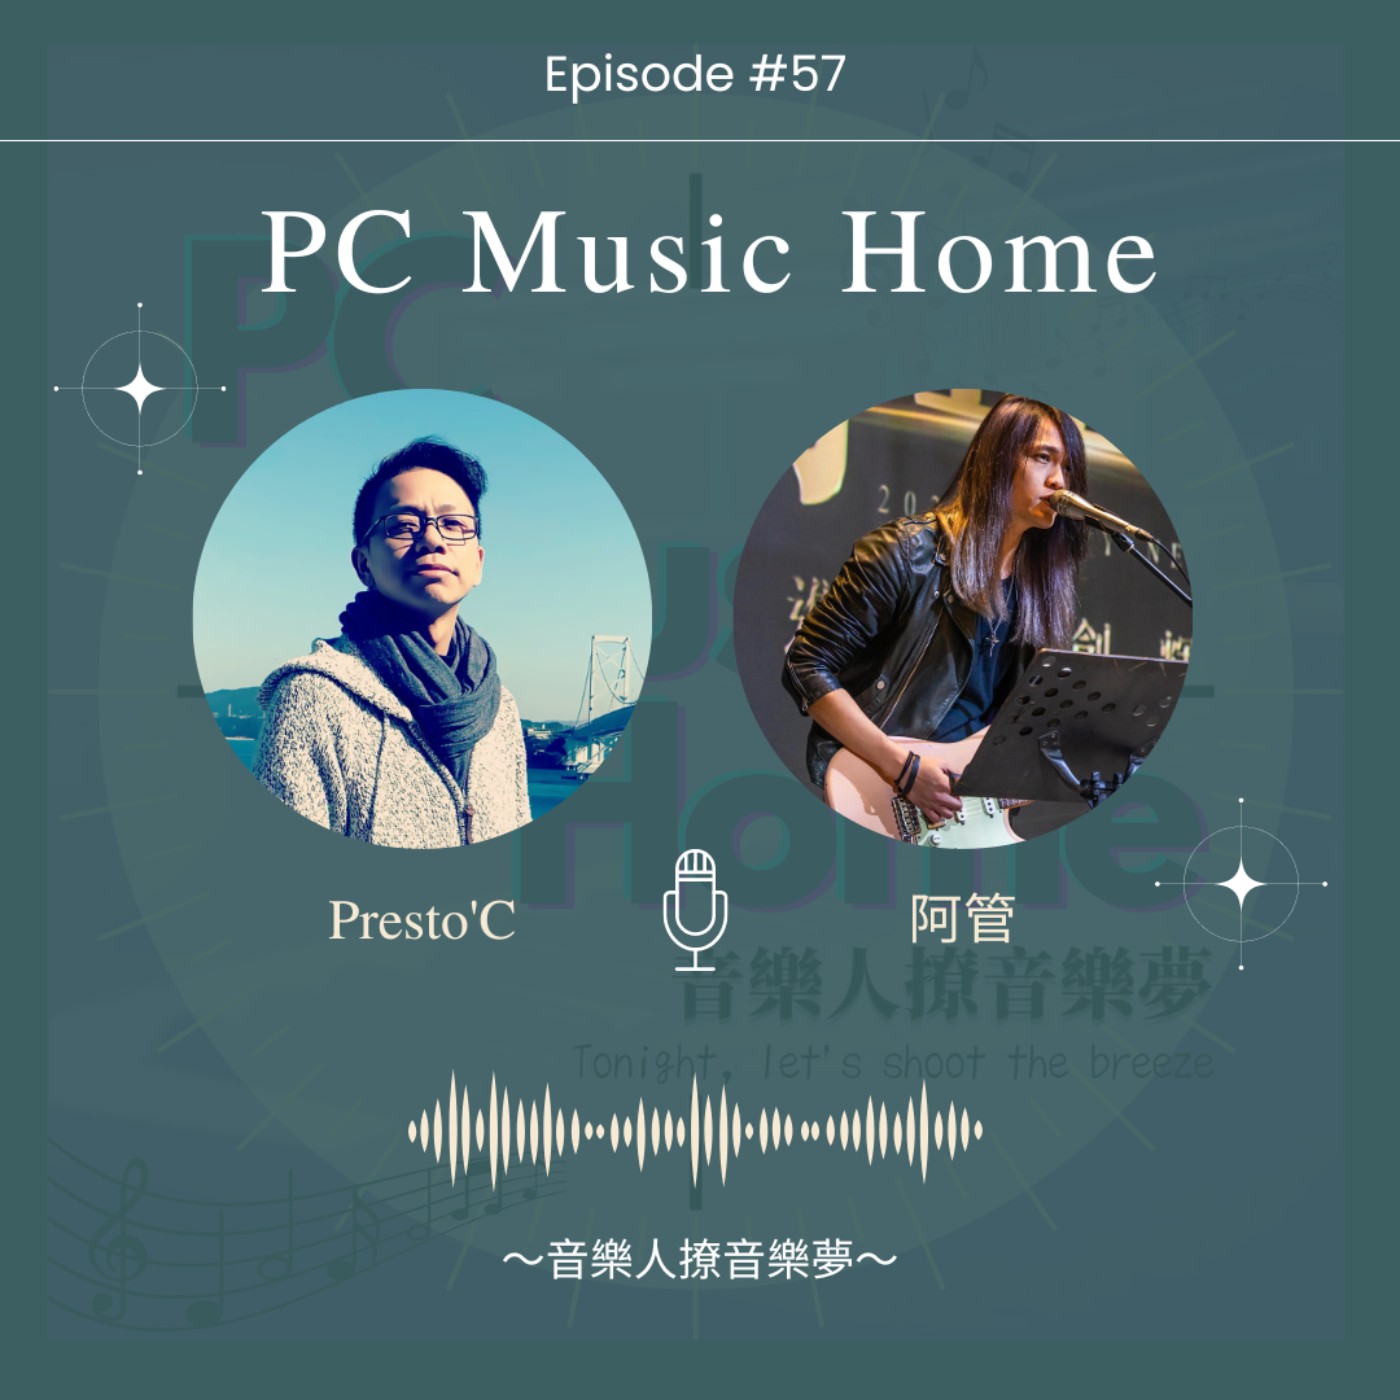 音樂談話誌《PC Music Home》